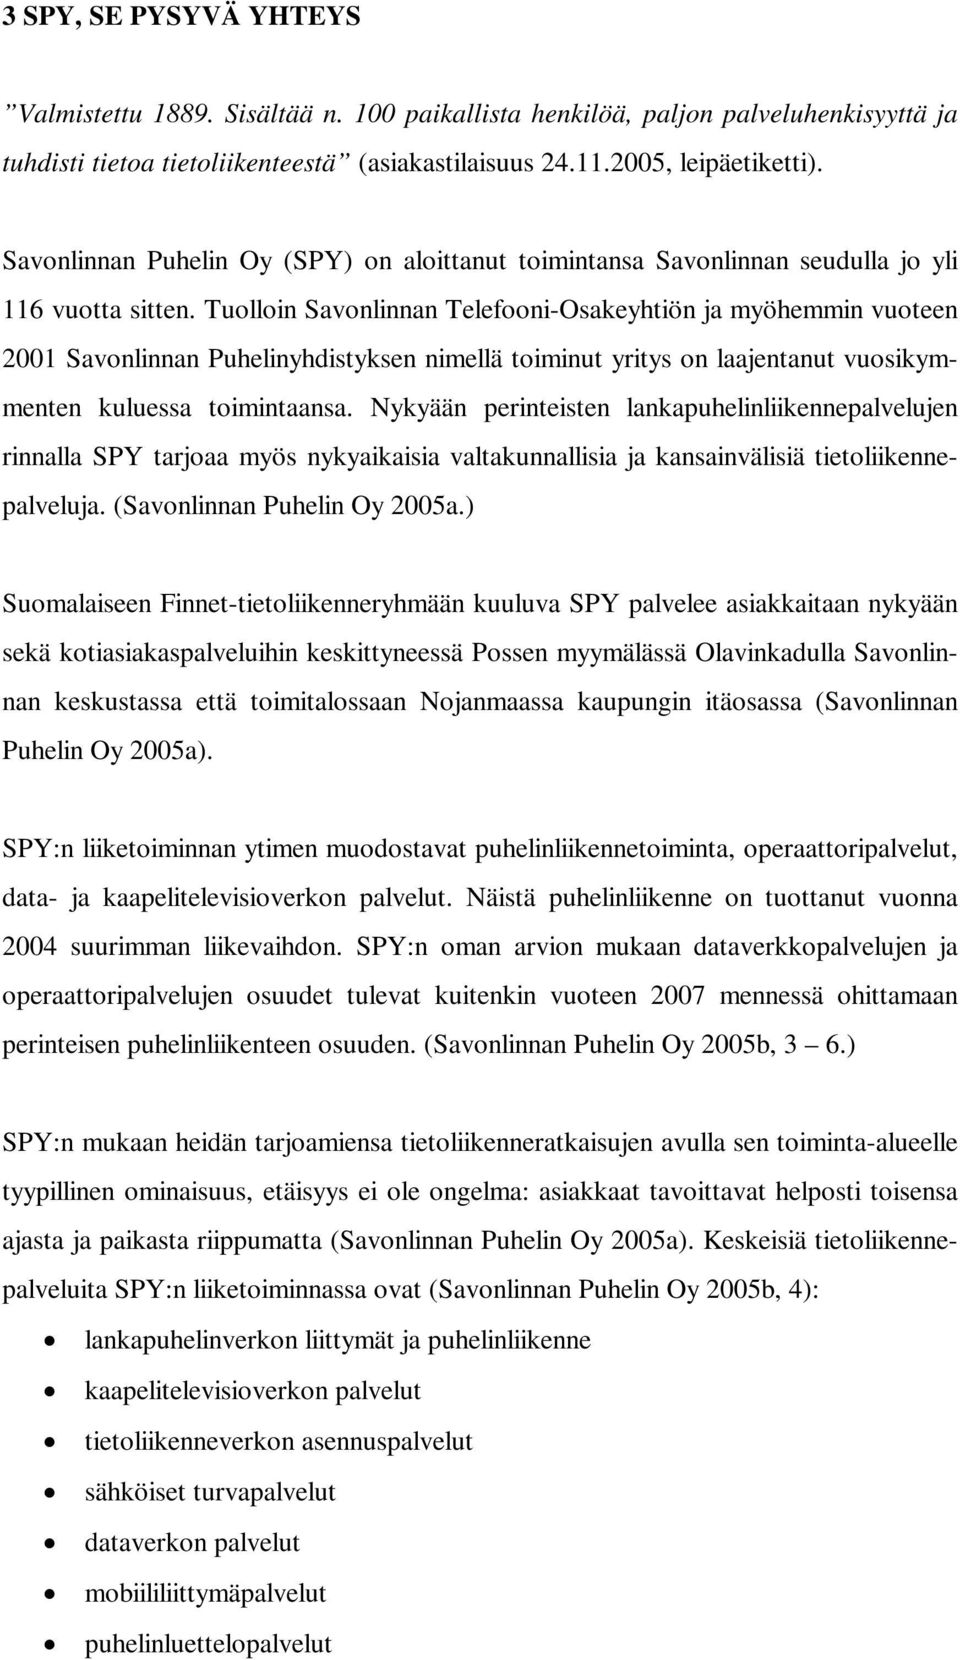 Tuolloin Savonlinnan Telefooni-Osakeyhtiön ja myöhemmin vuoteen 2001 Savonlinnan Puhelinyhdistyksen nimellä toiminut yritys on laajentanut vuosikymmenten kuluessa toimintaansa.